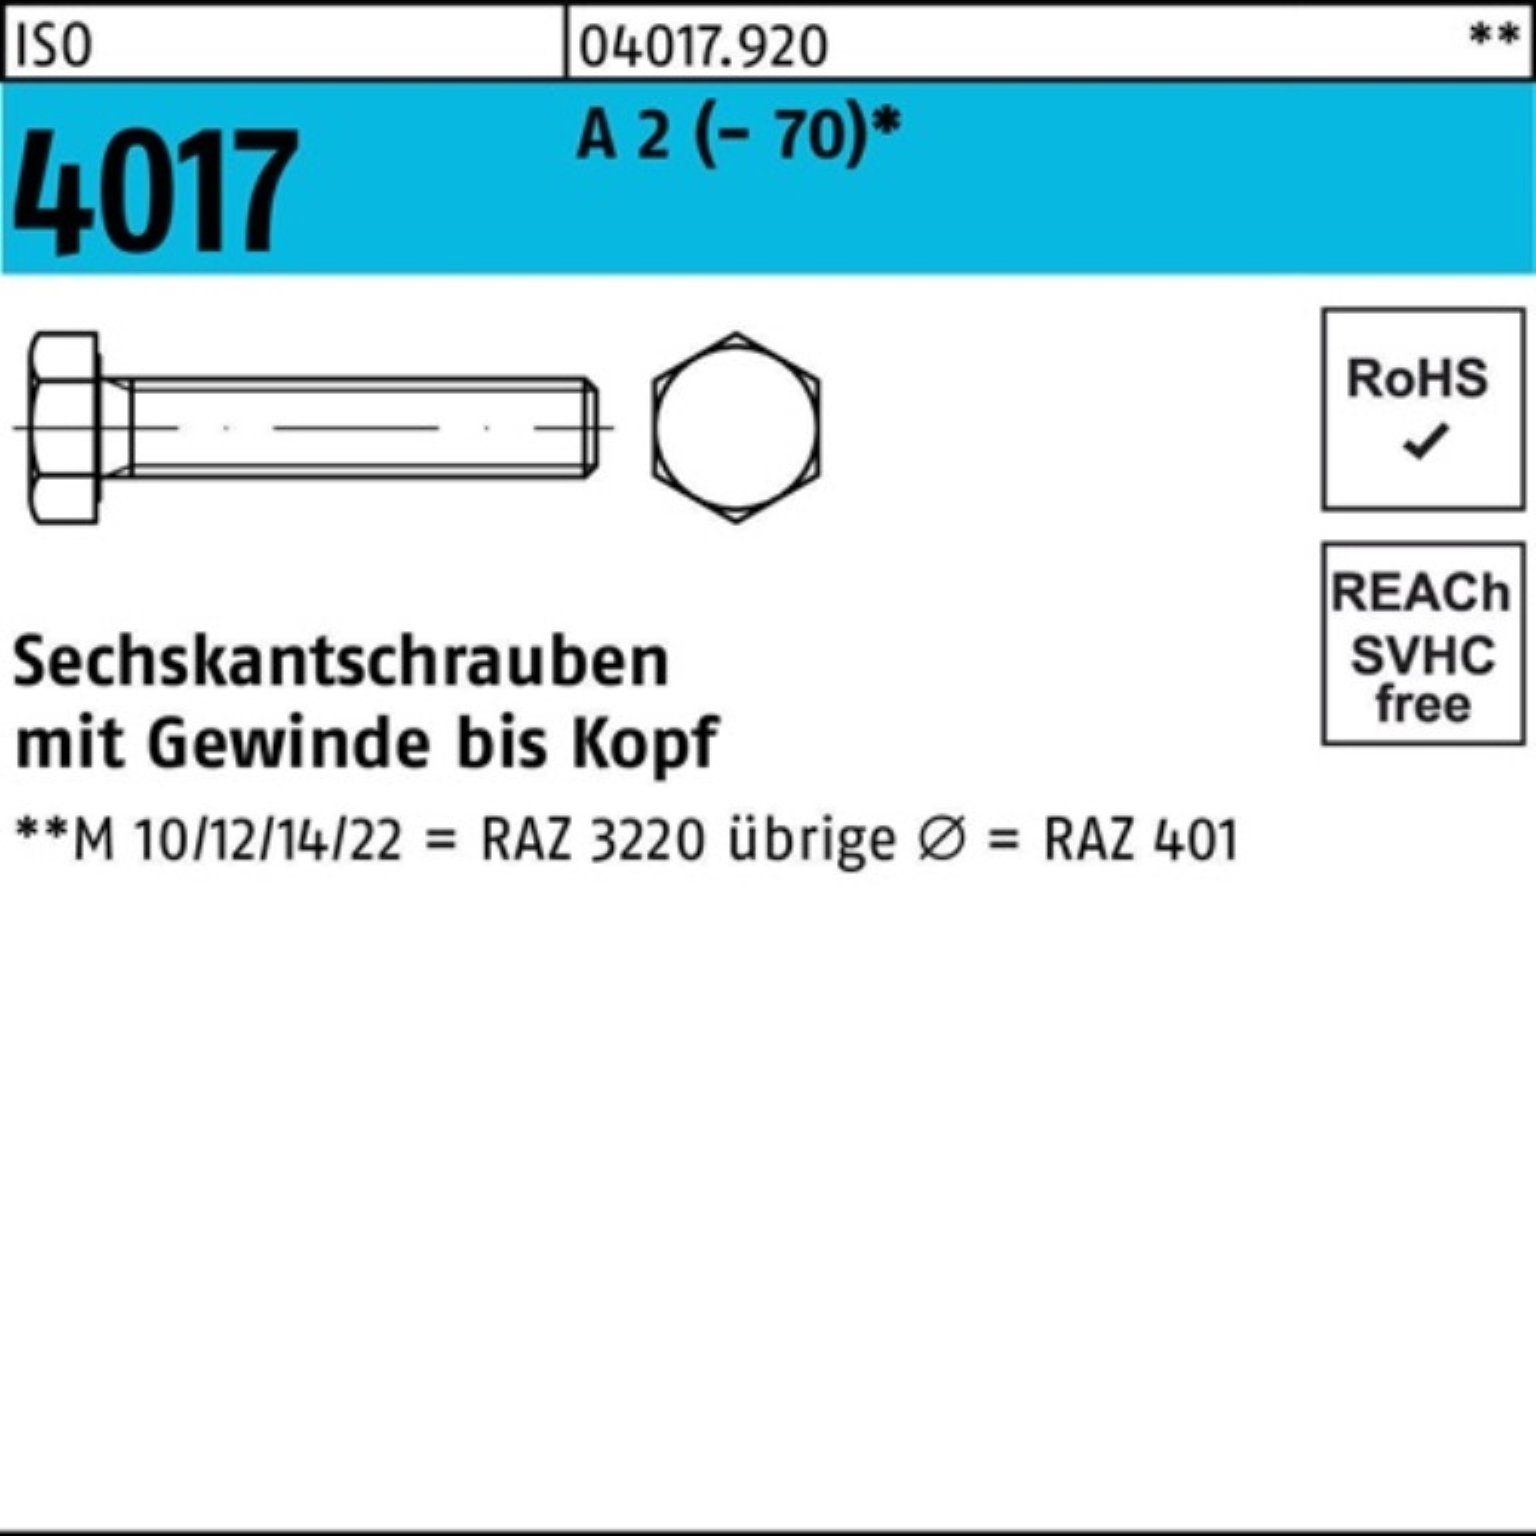 10 Stück Sechskantschraube 2 A (70) M20x Pack VG ISO 100er 170 Bufab Sechskantschraube 4017